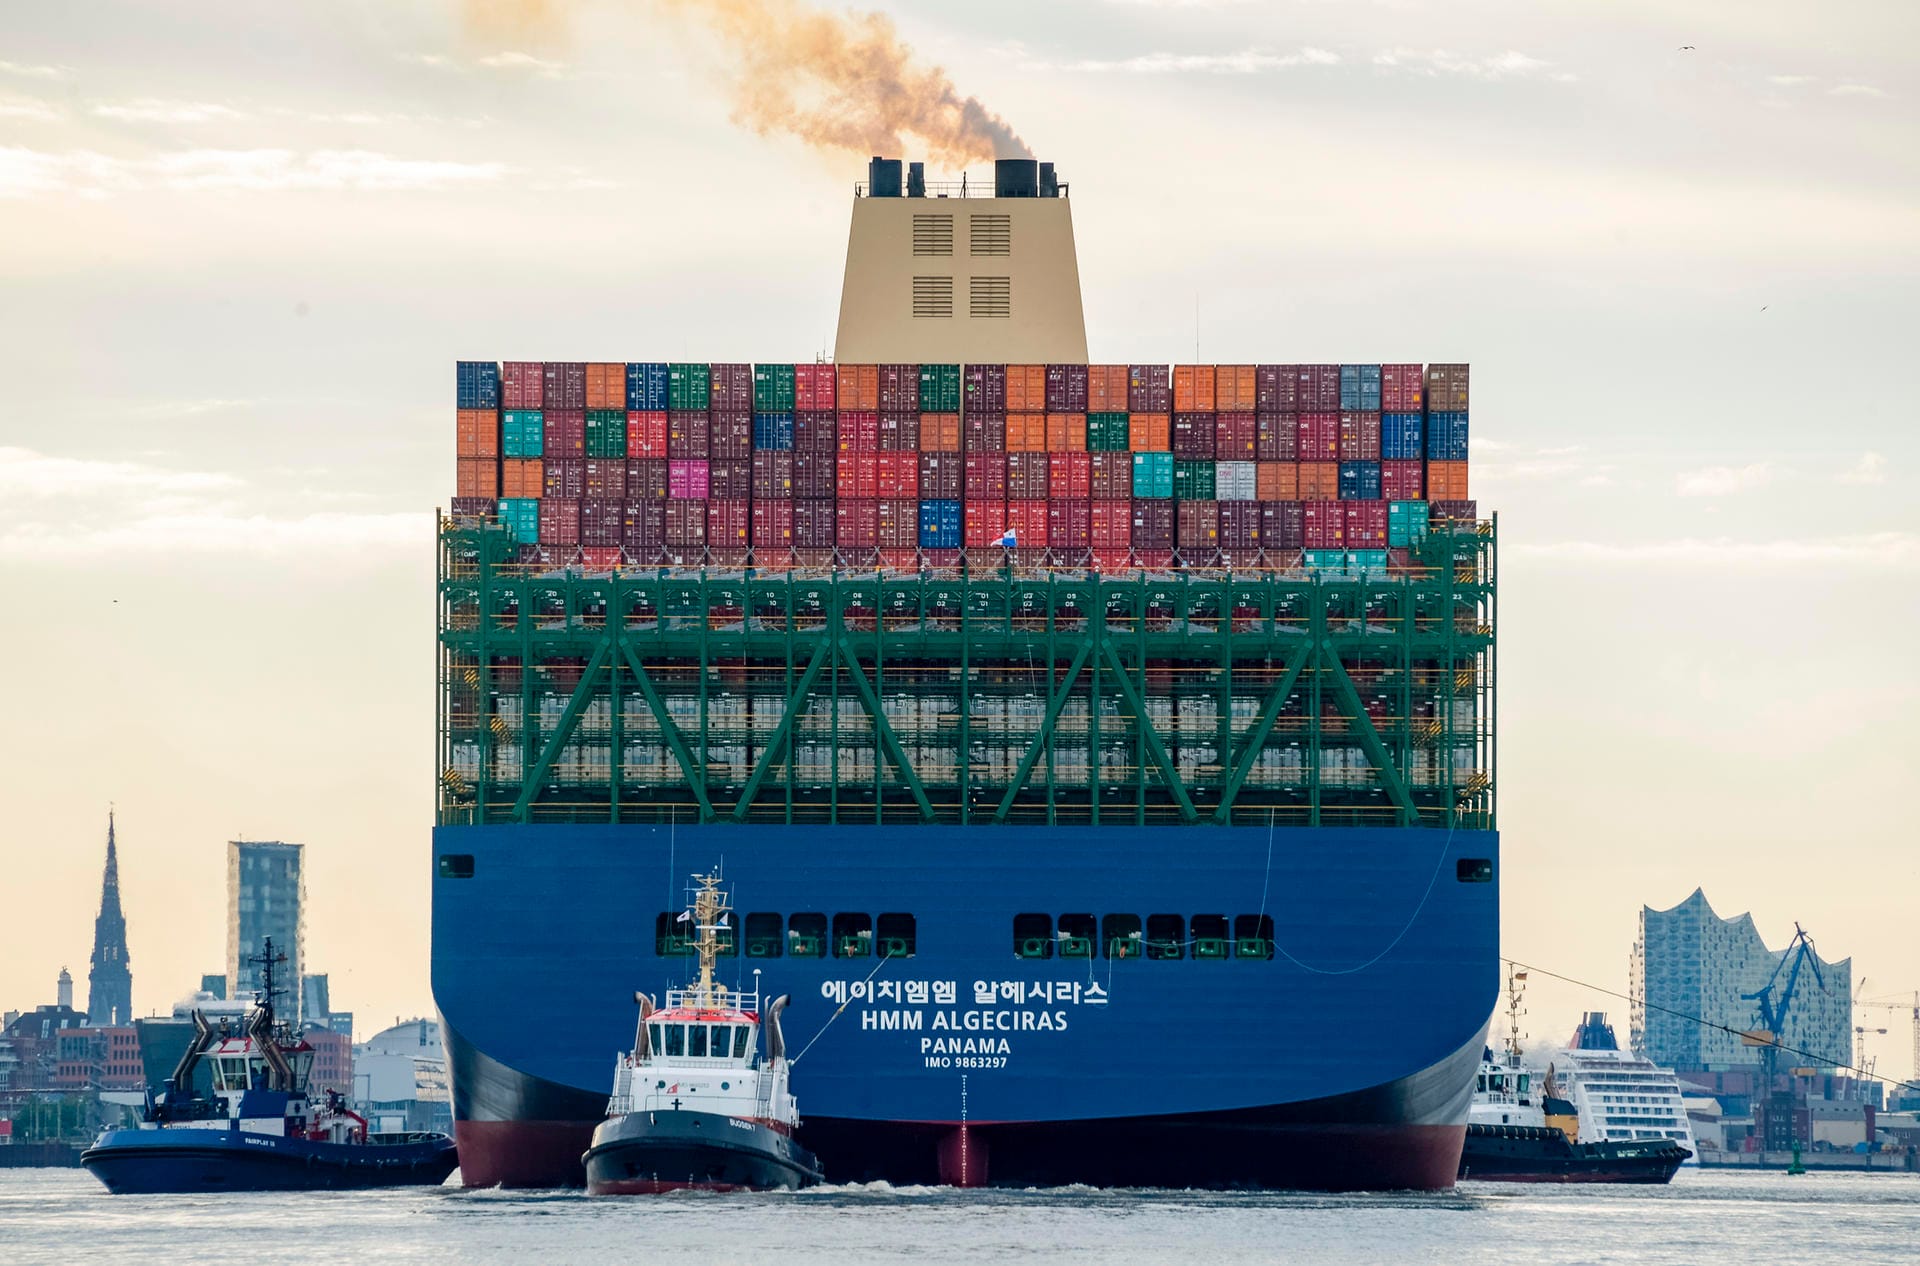 Der Frachter ist mit Containern beladen: Das Schiff kann 23.964 Standardcontainer (TEU) laden und damit gut 200 TEU mehr als die "MSC Gülsün" und ihre Schwesterschiffe, die bis April den Titel der weltgrößten Containerriesen für sich beanspruchen konnten.